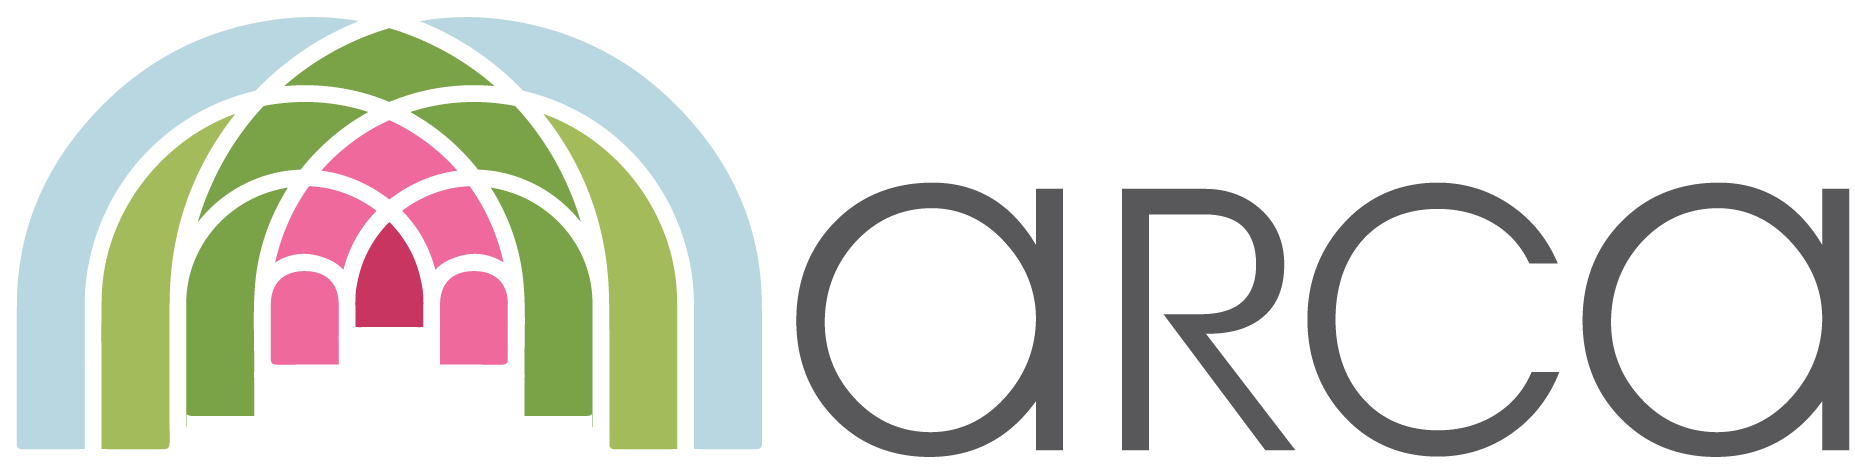 Arka company logotype